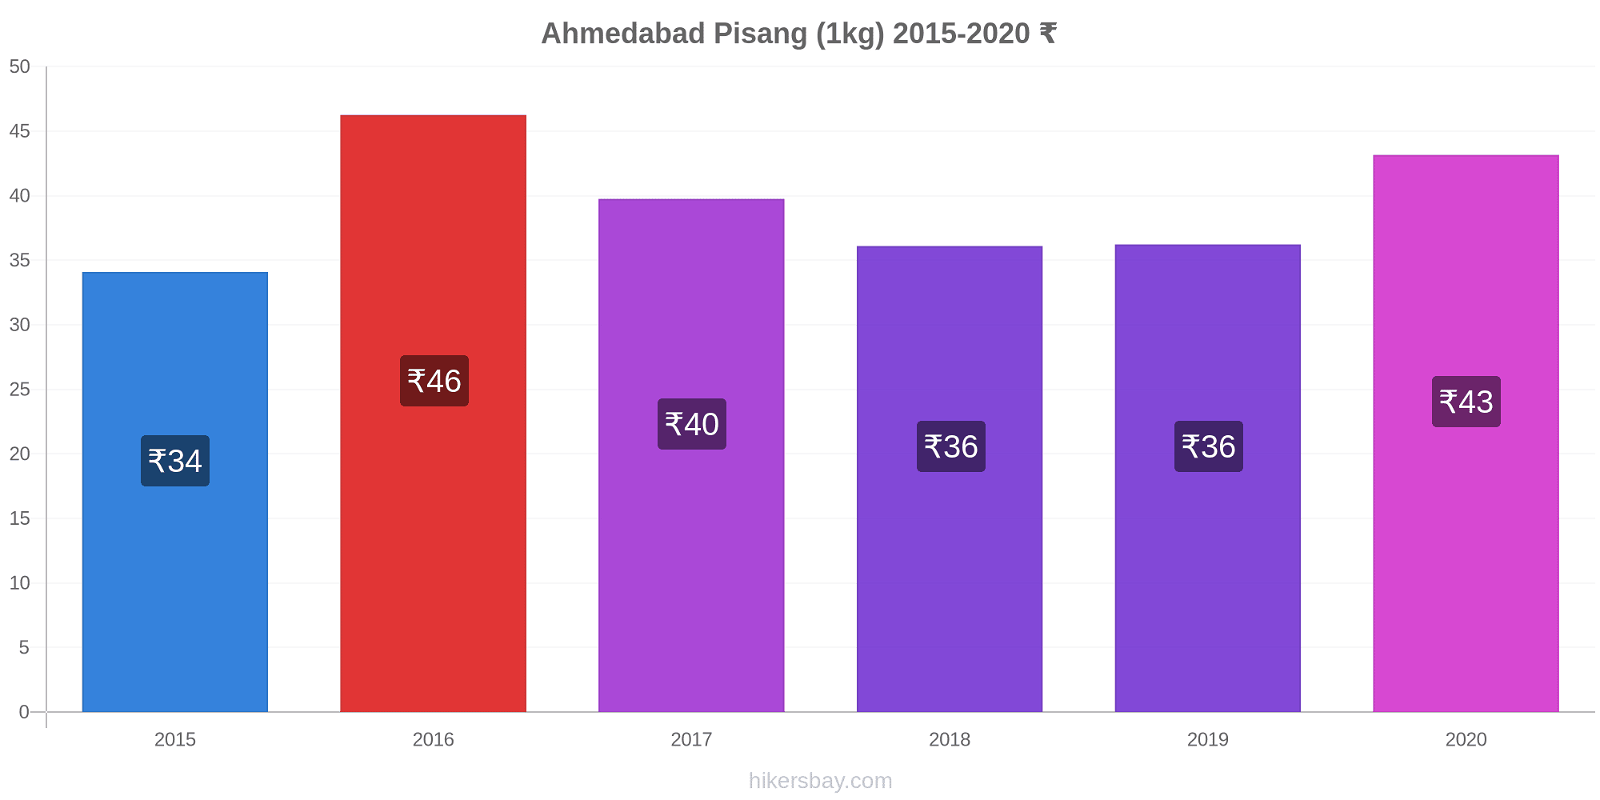 Ahmedabad perubahan harga Pisang (1kg) hikersbay.com